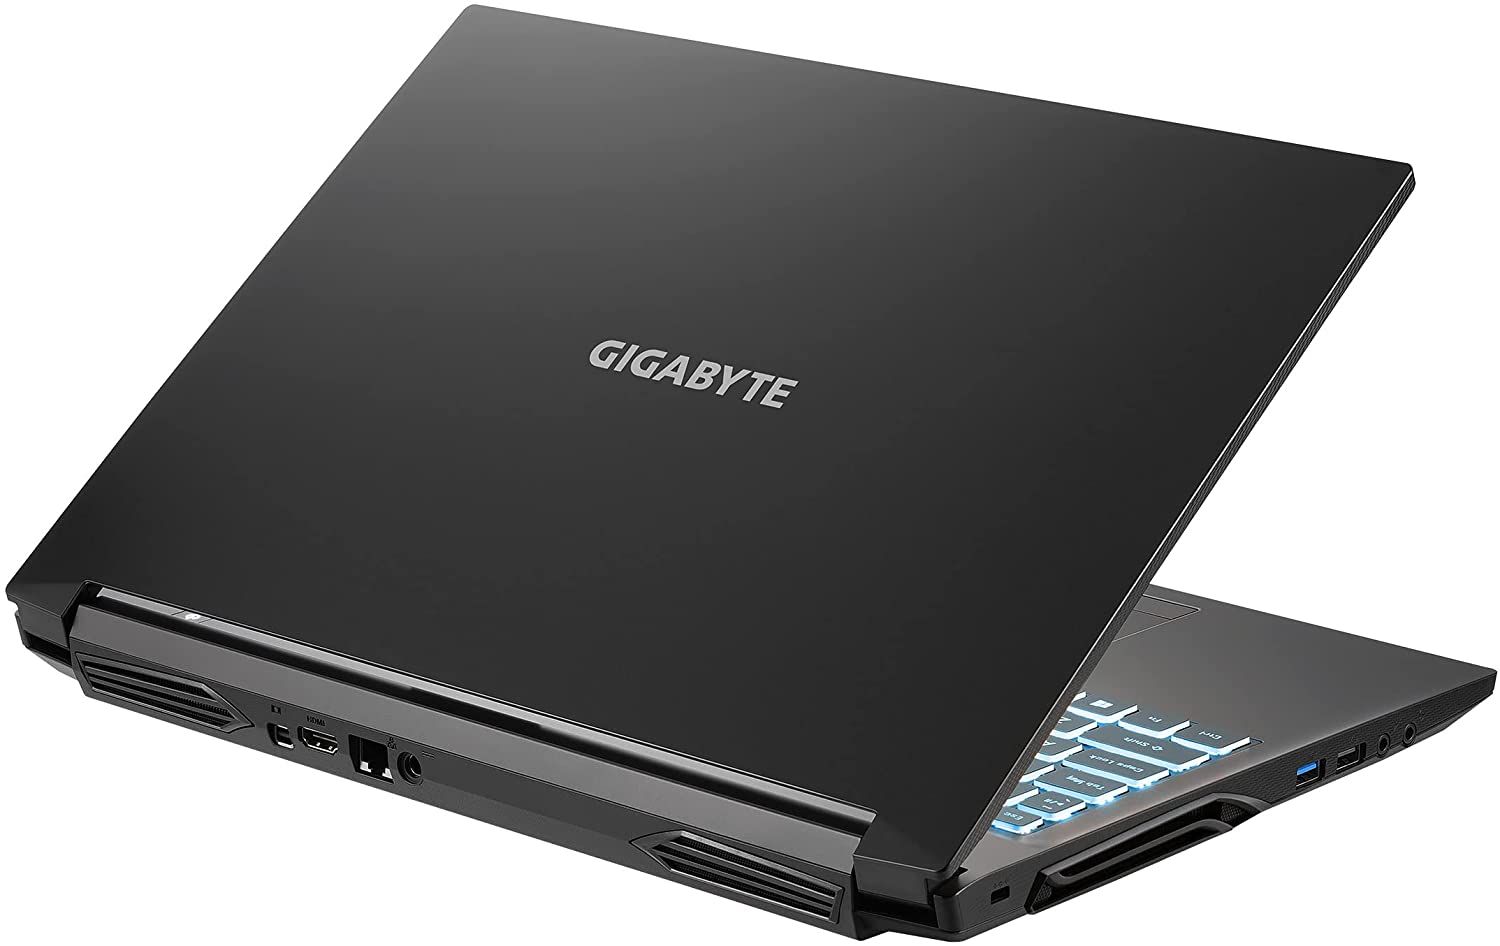 Gigabyte G5 GD Gaming Laptop